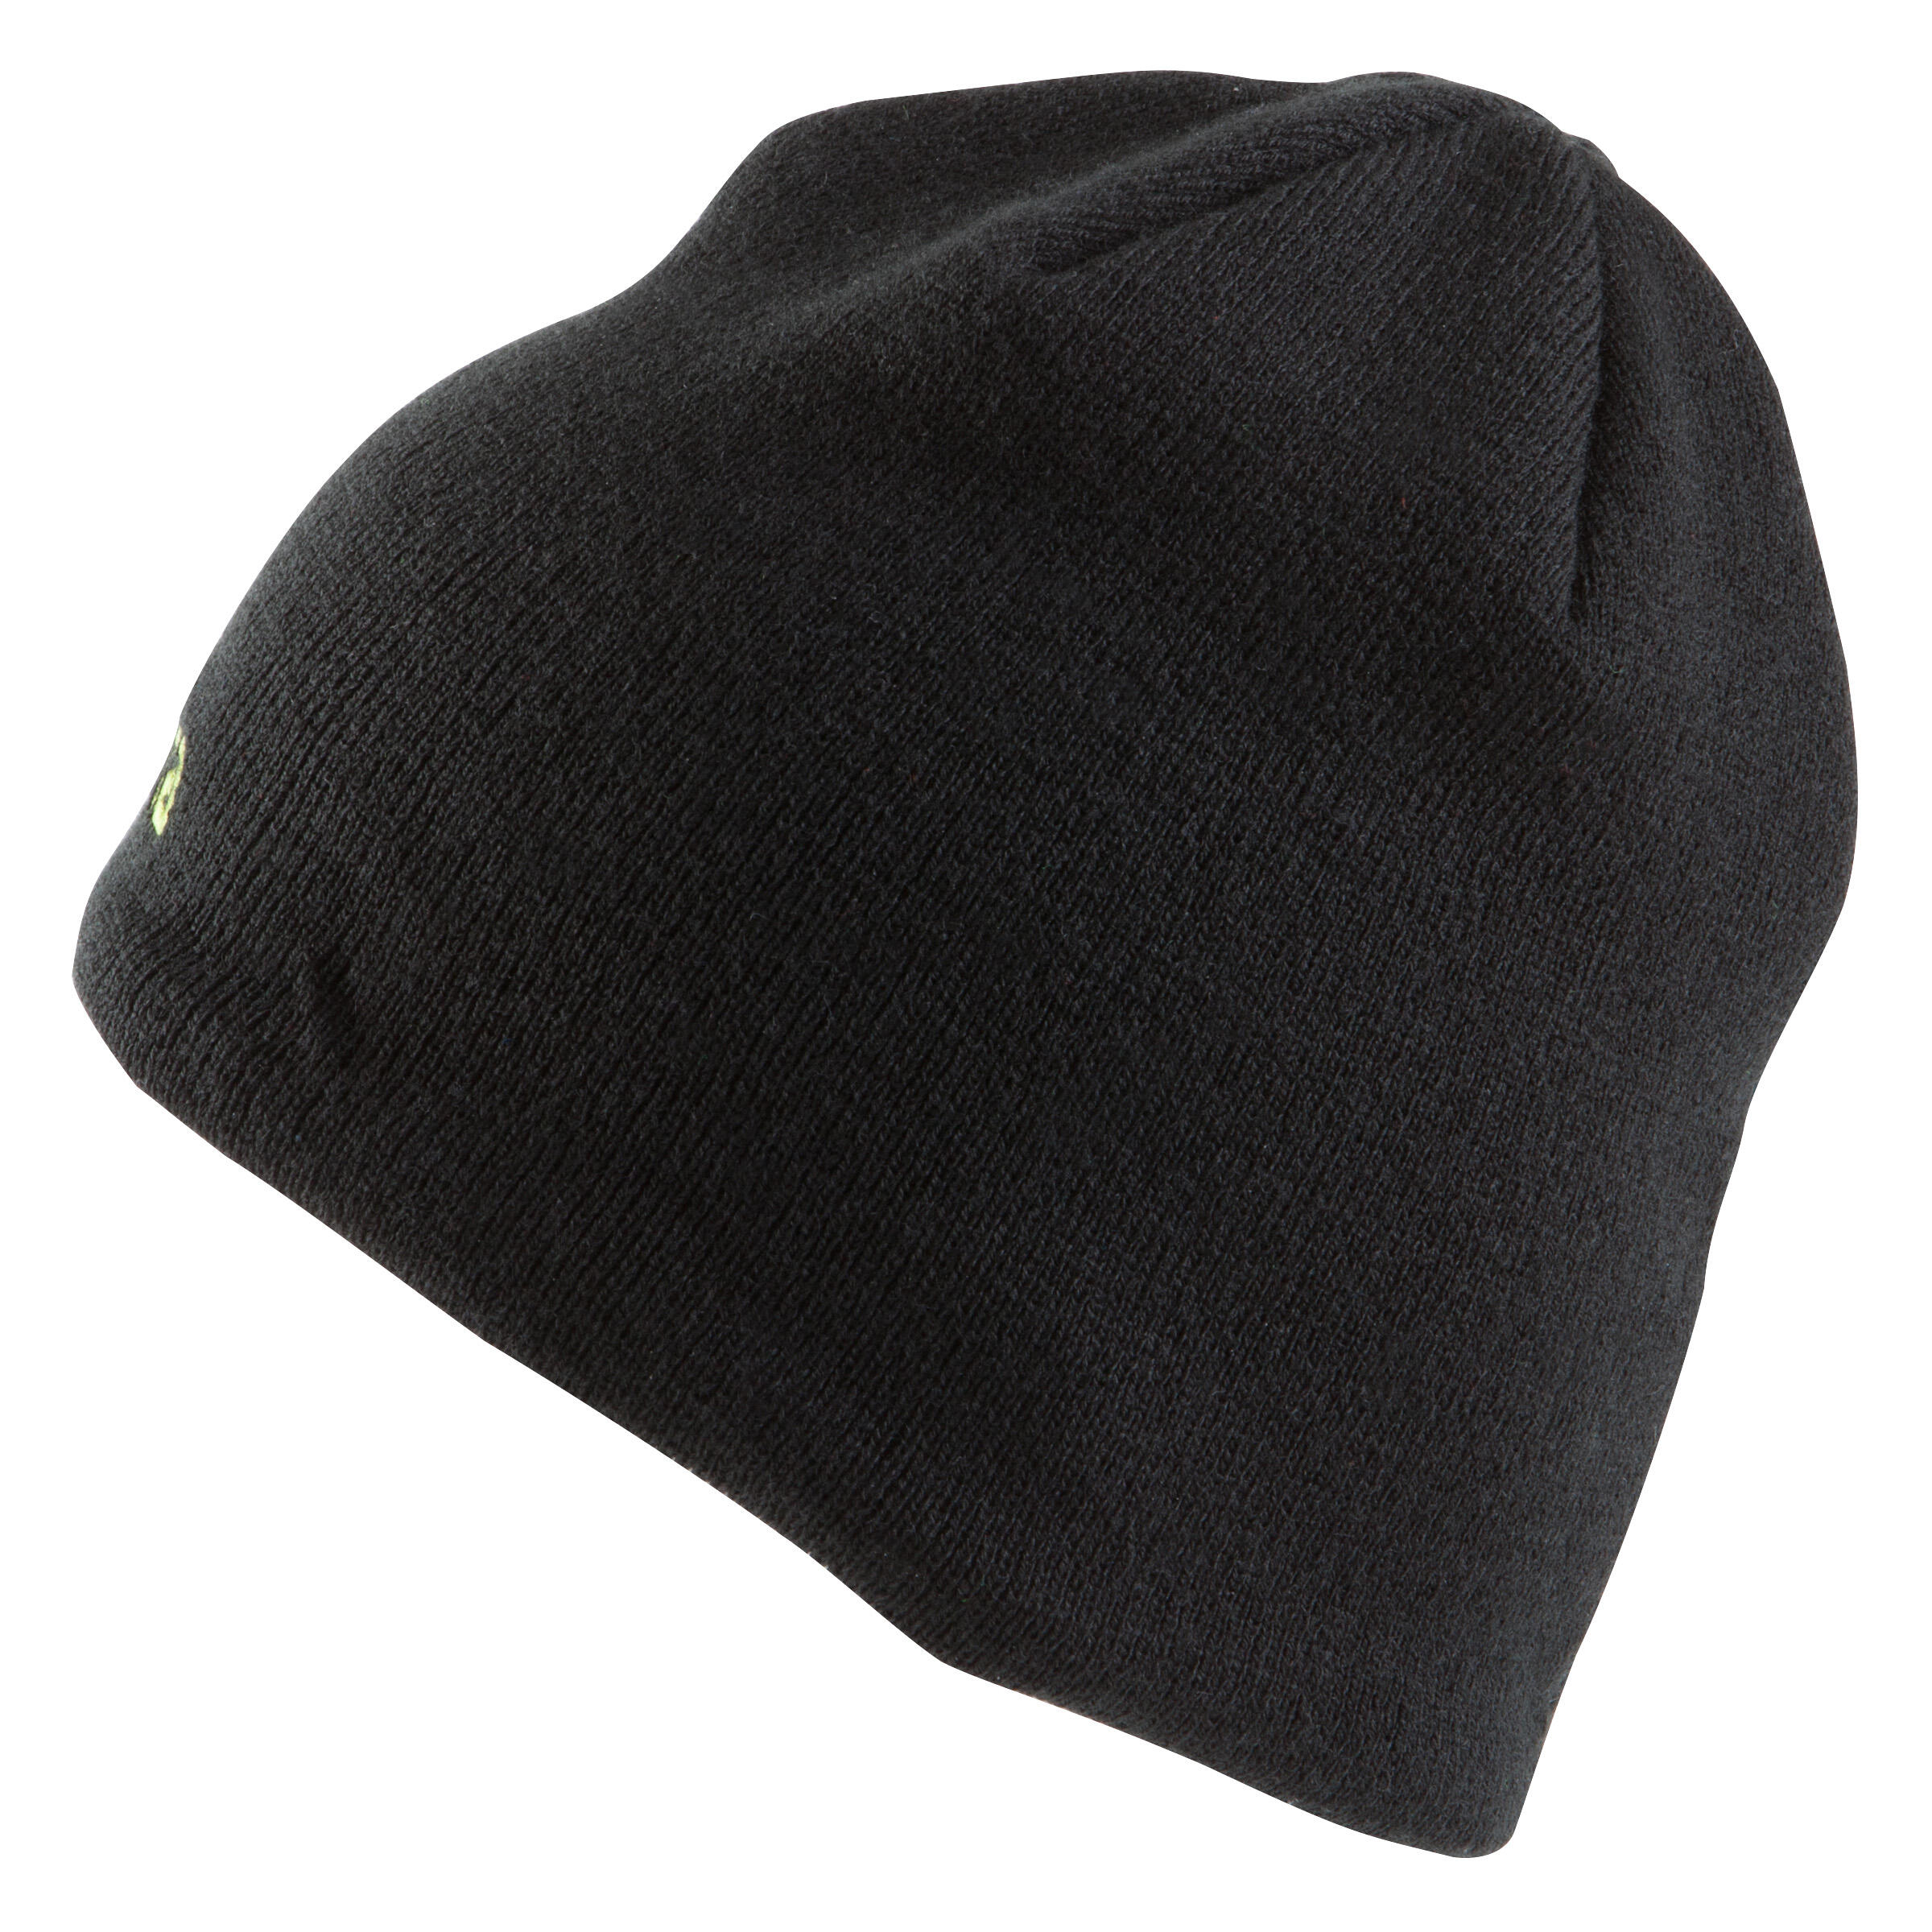 Keepwarm Kids' Fleece-Lined Hat - Black 5/8